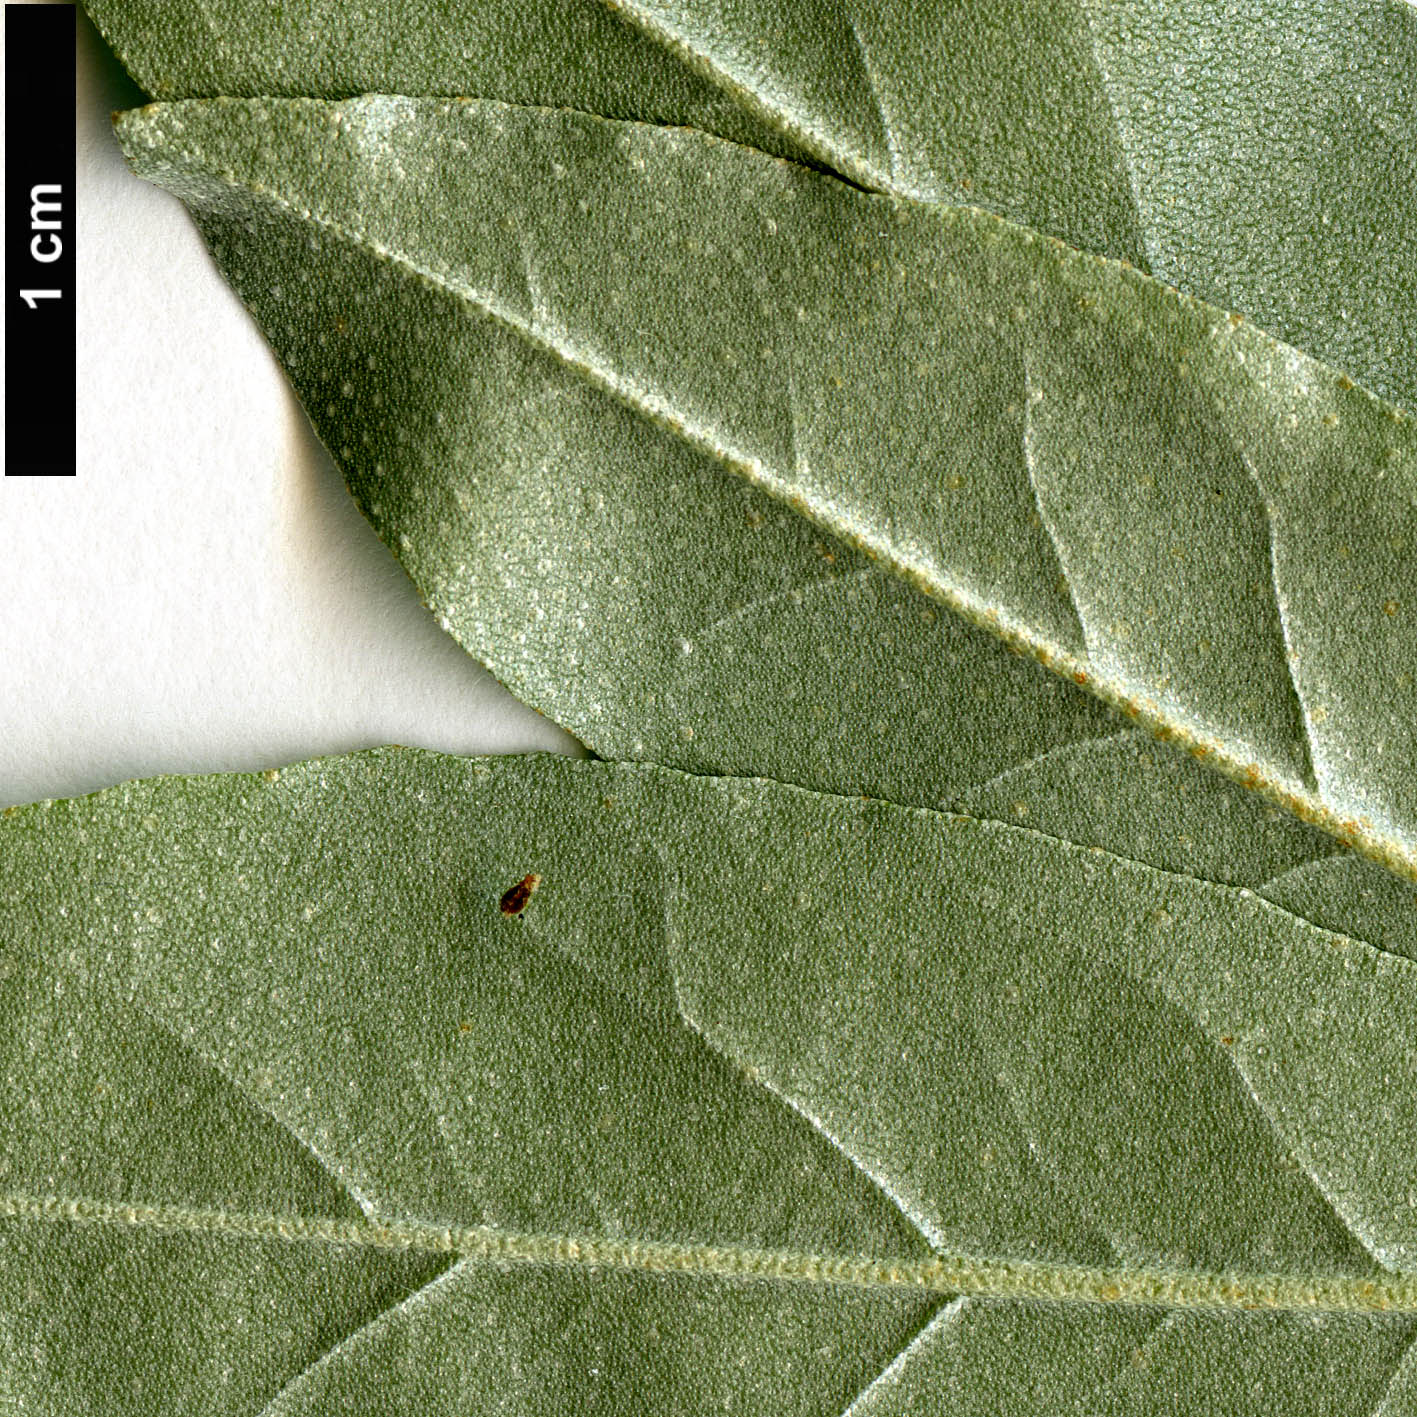 High resolution image: Family: Elaeagnaceae - Genus: Elaeagnus - Taxon: umbellata